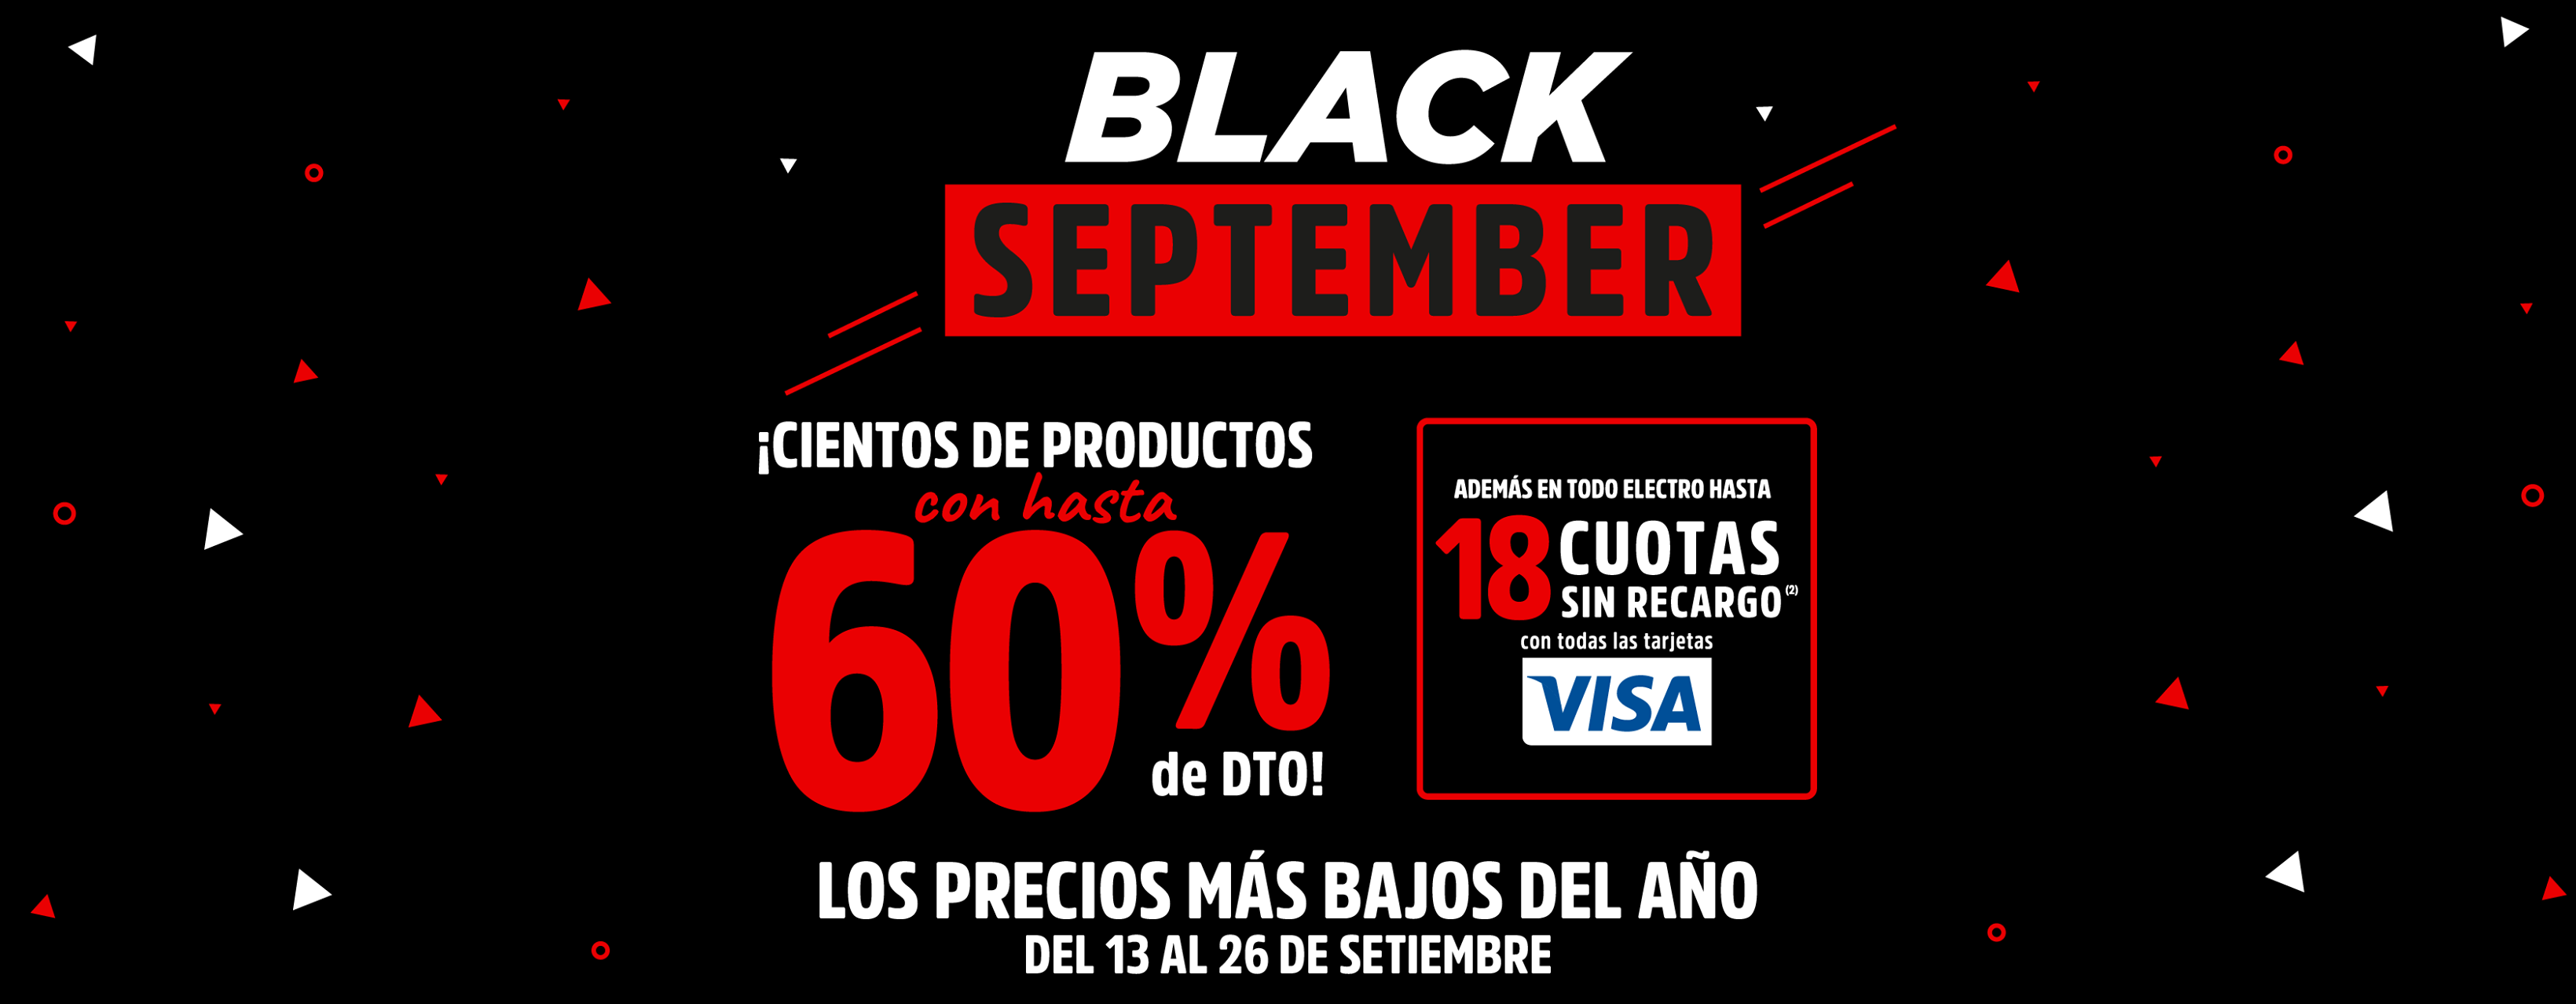 black september tata sale descuentos comprar online tiendas